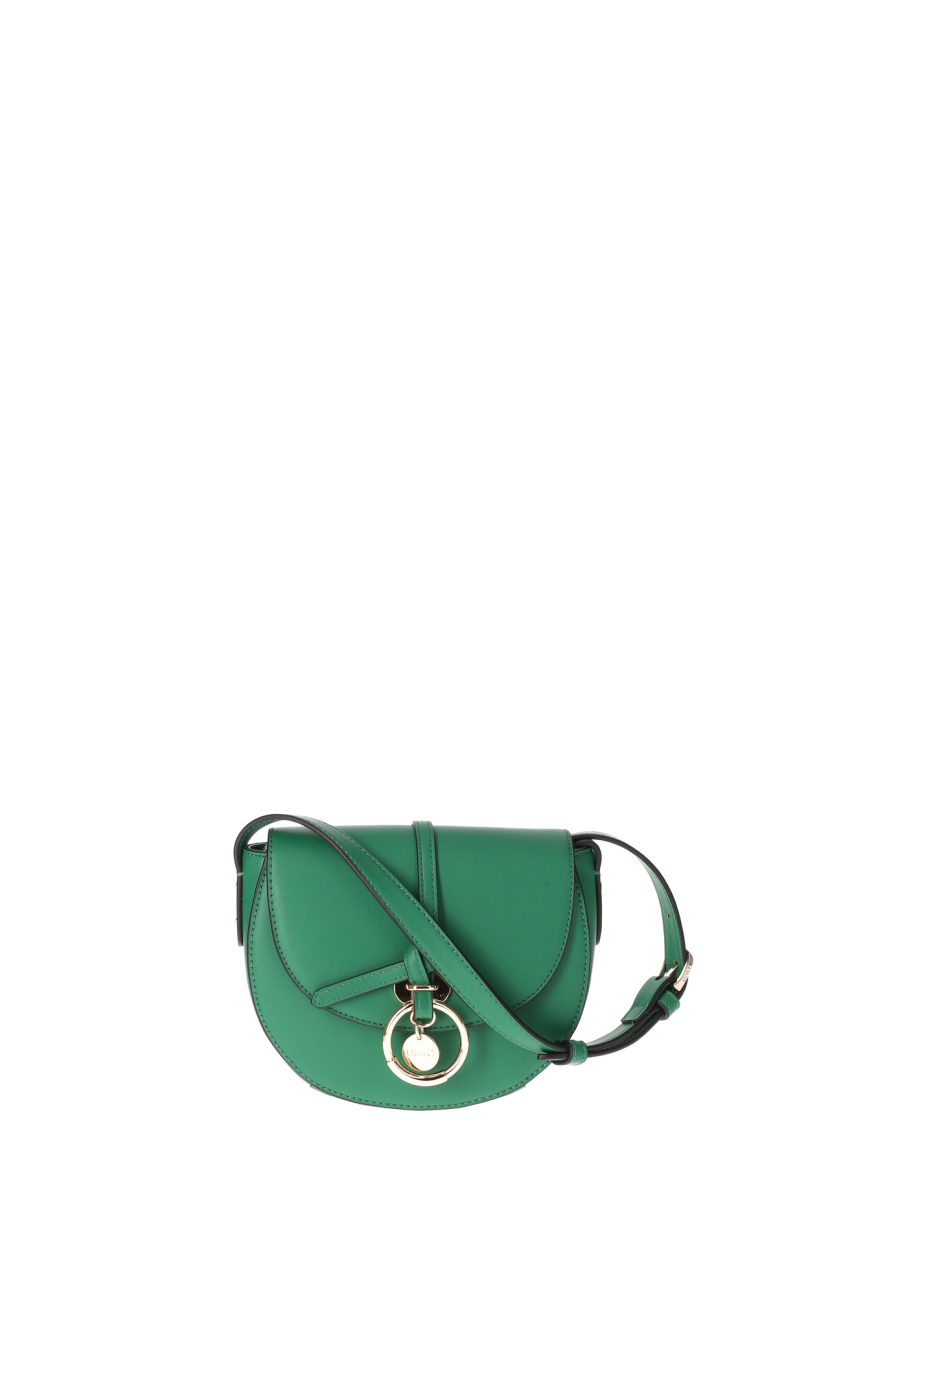 LIU·JO bolso en ecopiel color verde con tapa y bolsillo con cierre en oro